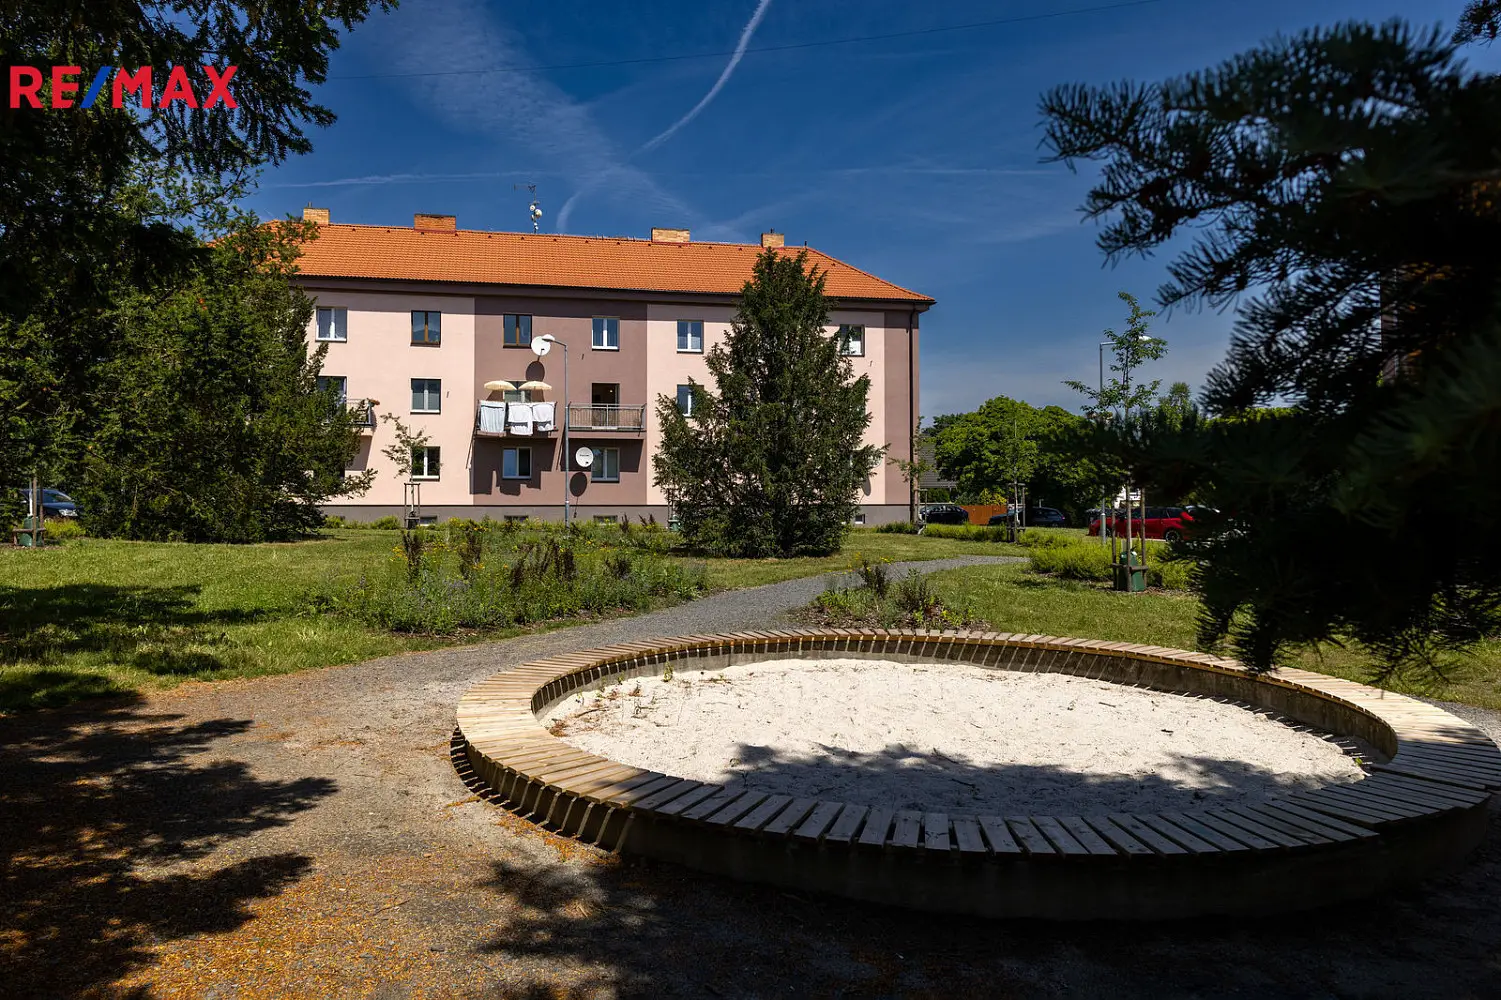 Malé náměstí, Dýšina, okres Plzeň-město